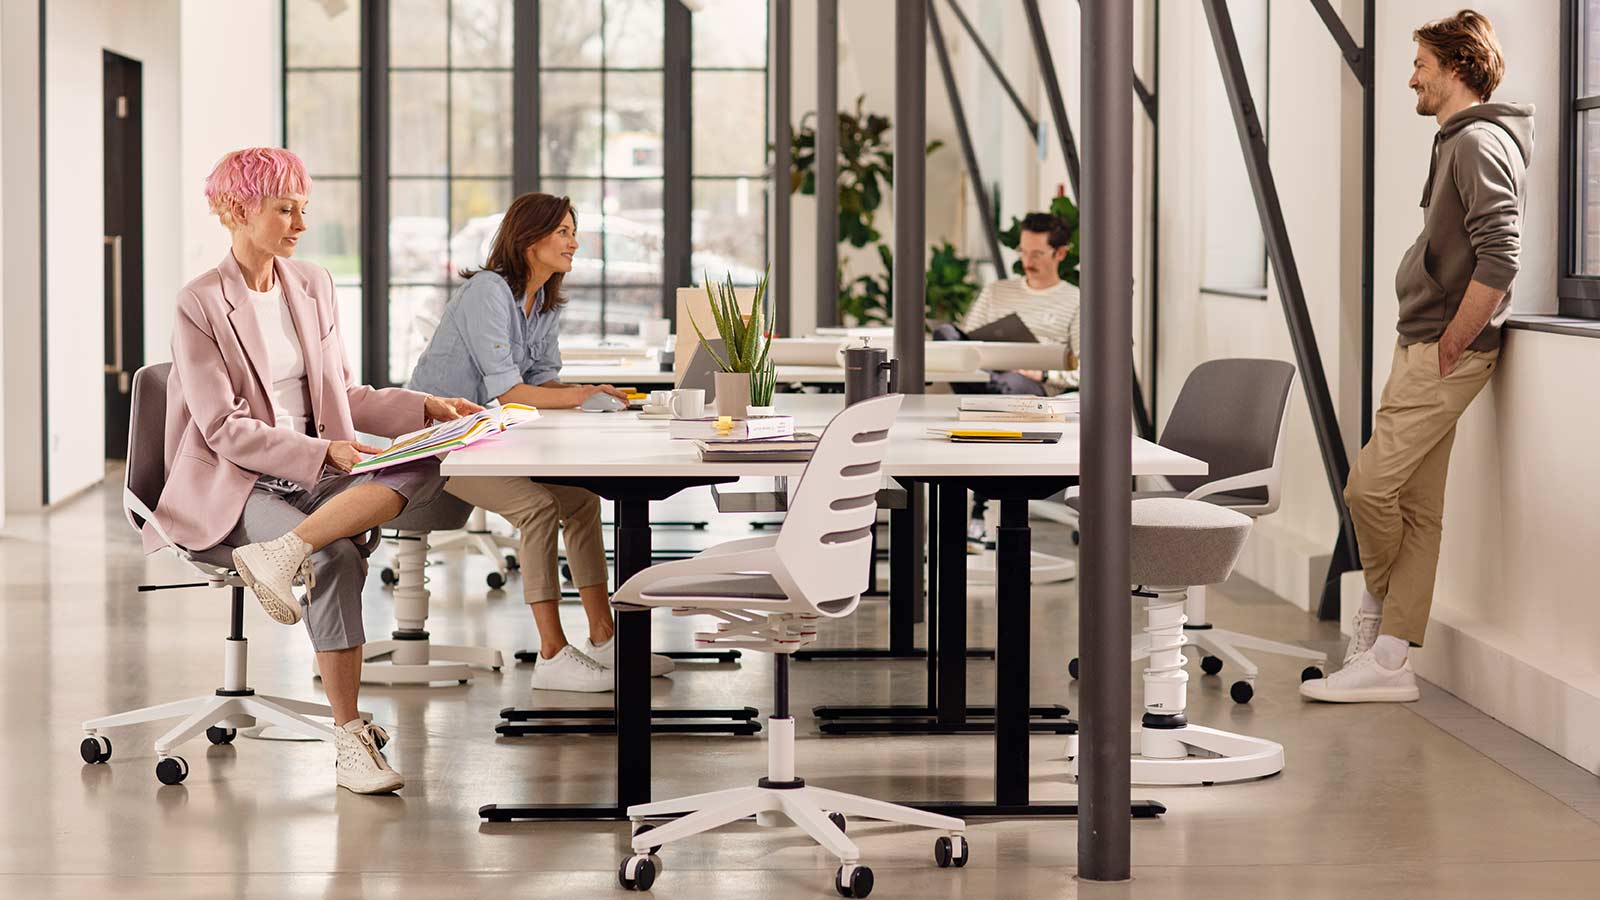 Bürostuhl Aeris Numo Task am Besprechungstisch mit 4 Personen weißes Gestell Std. grau-beige farbene Polster